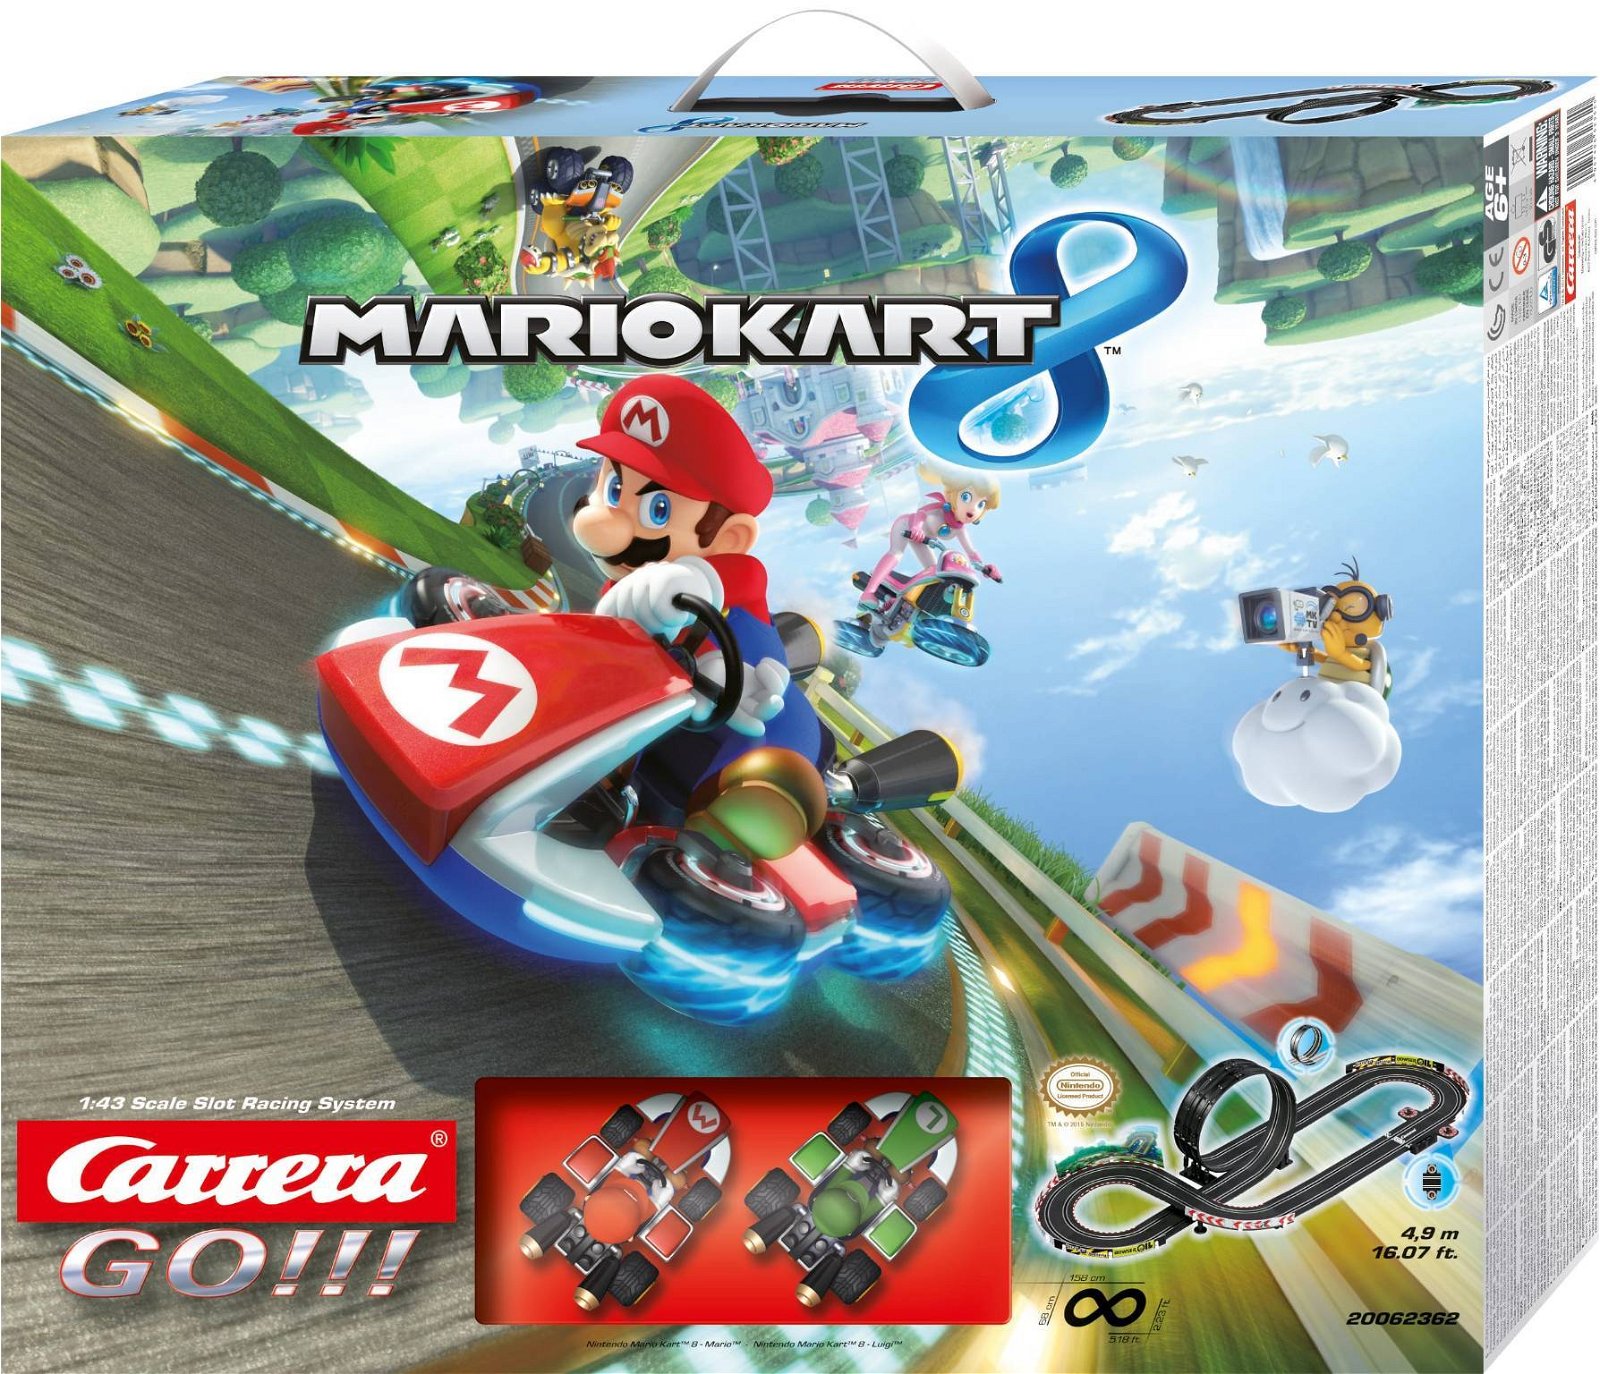 Immagine di Carrera e Mario Kart: annunciati tutti i nuovi prodotti